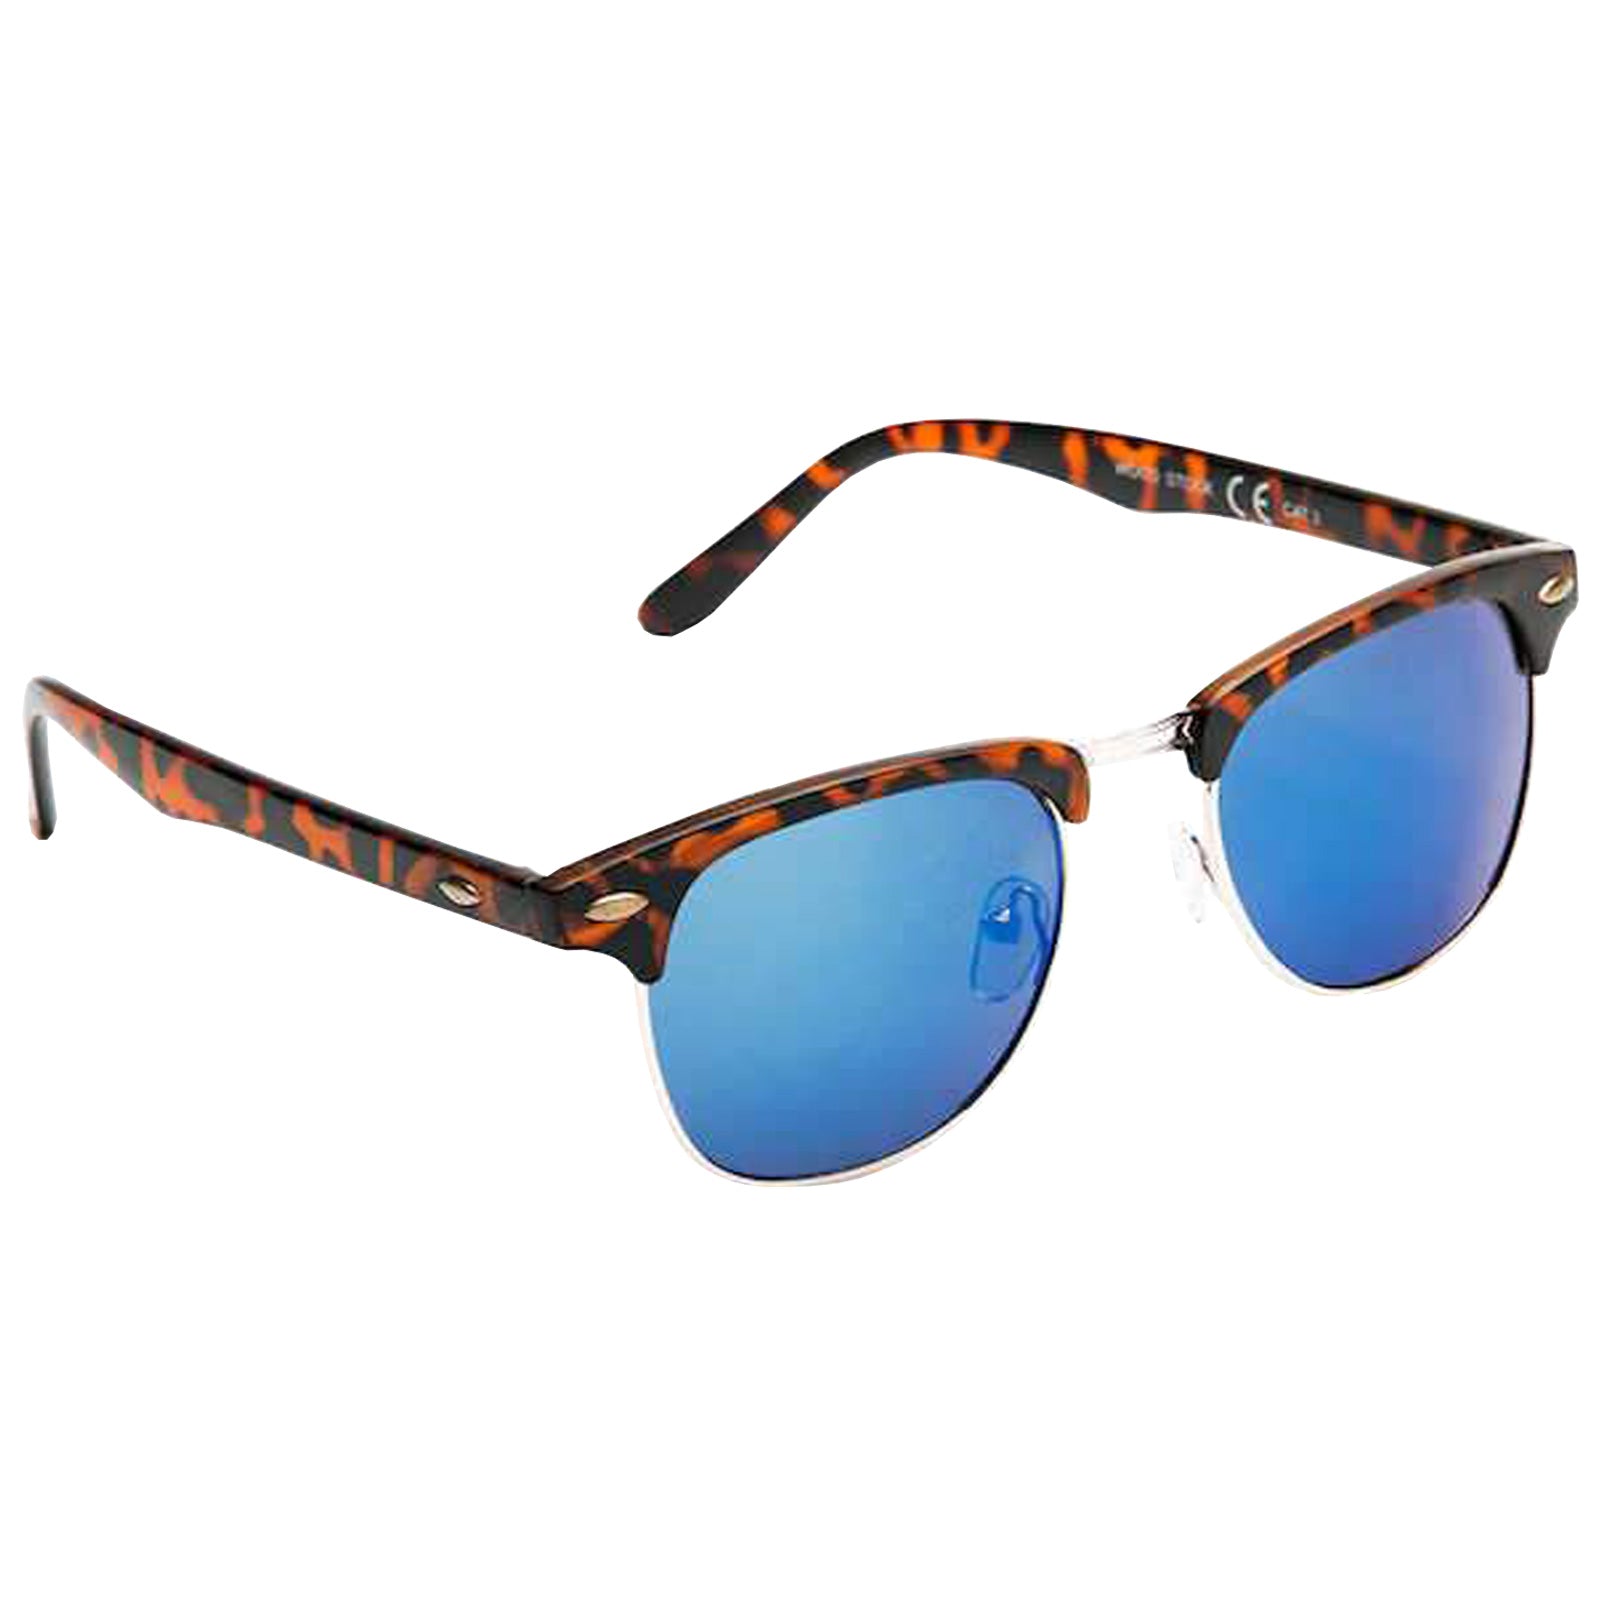 Eyelevel Mens Woodstock Sunglasses